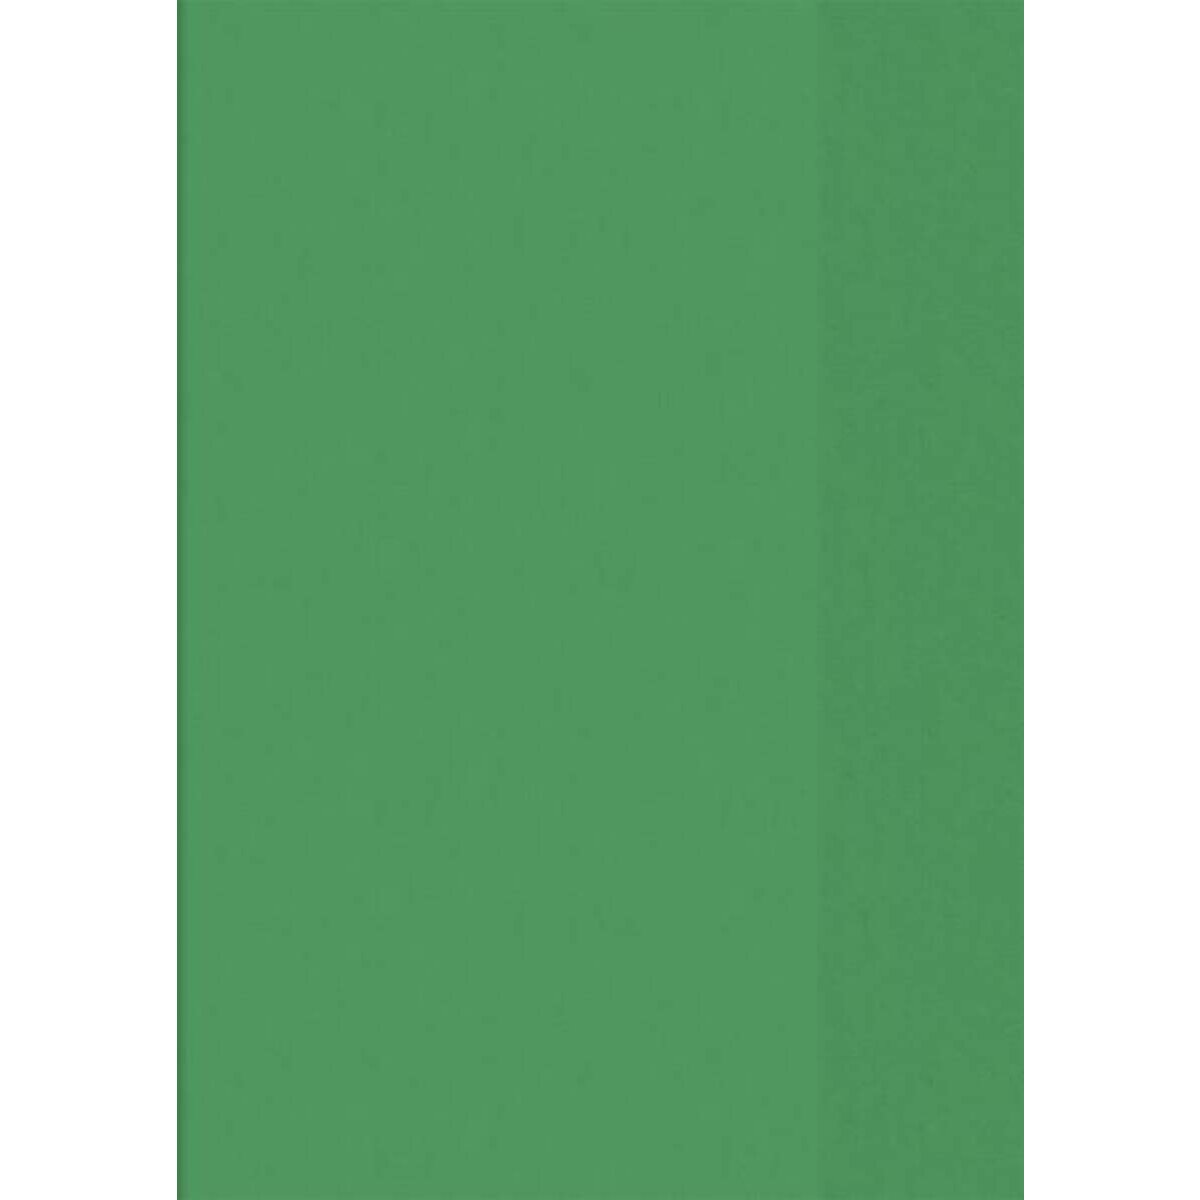 BRUNNEN Hefthülle A4, transparent grün